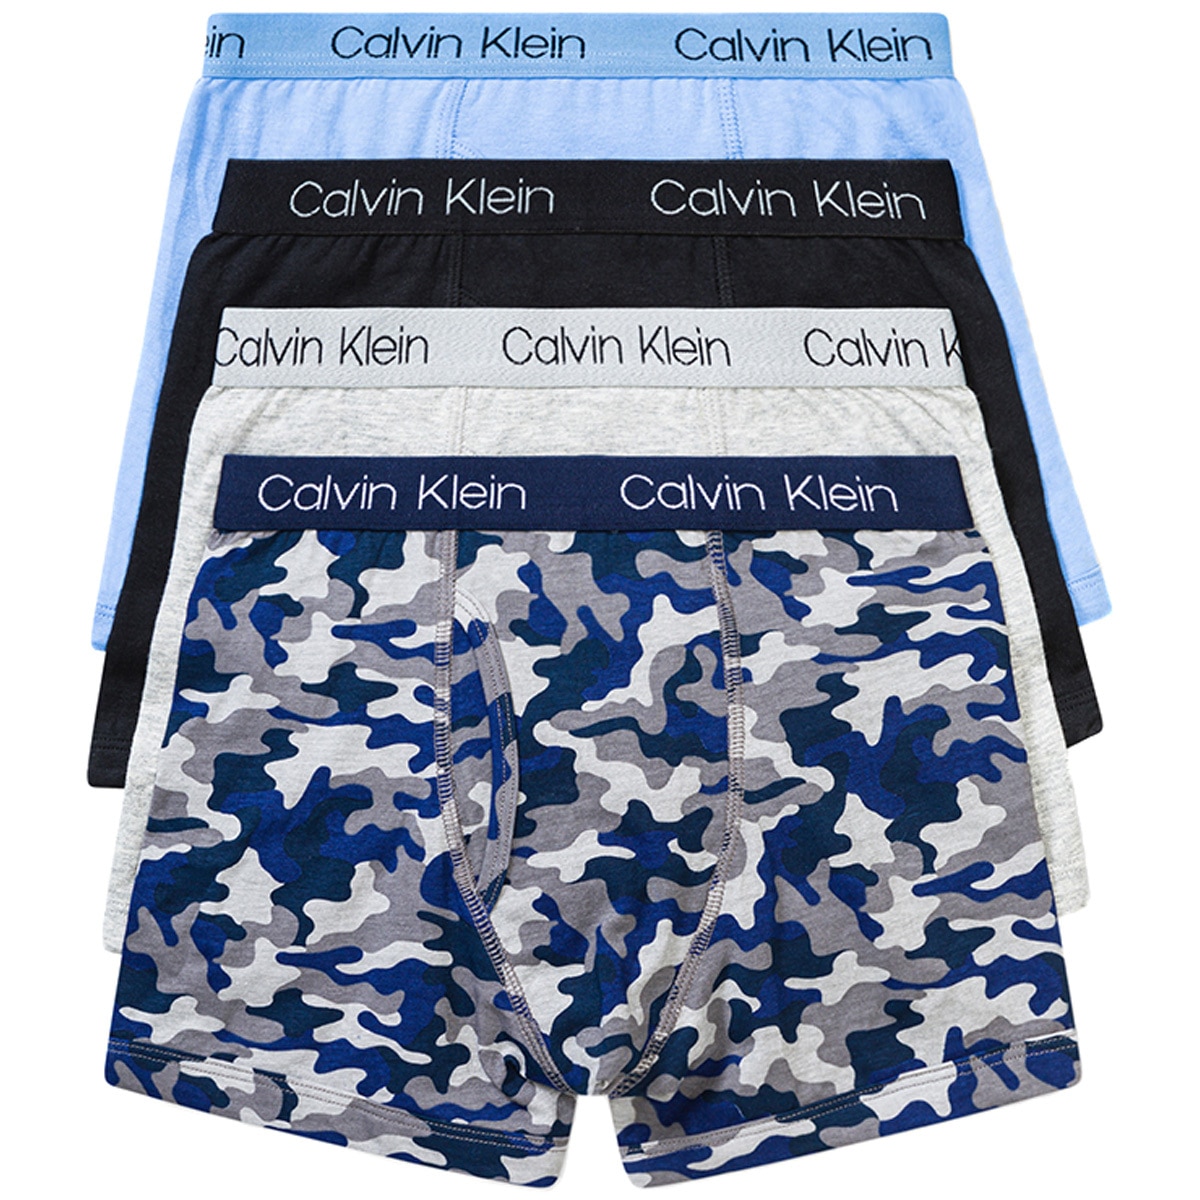 Calvin Klein Kids' Underwear Blue, Grey u0026 Black | Costco ...